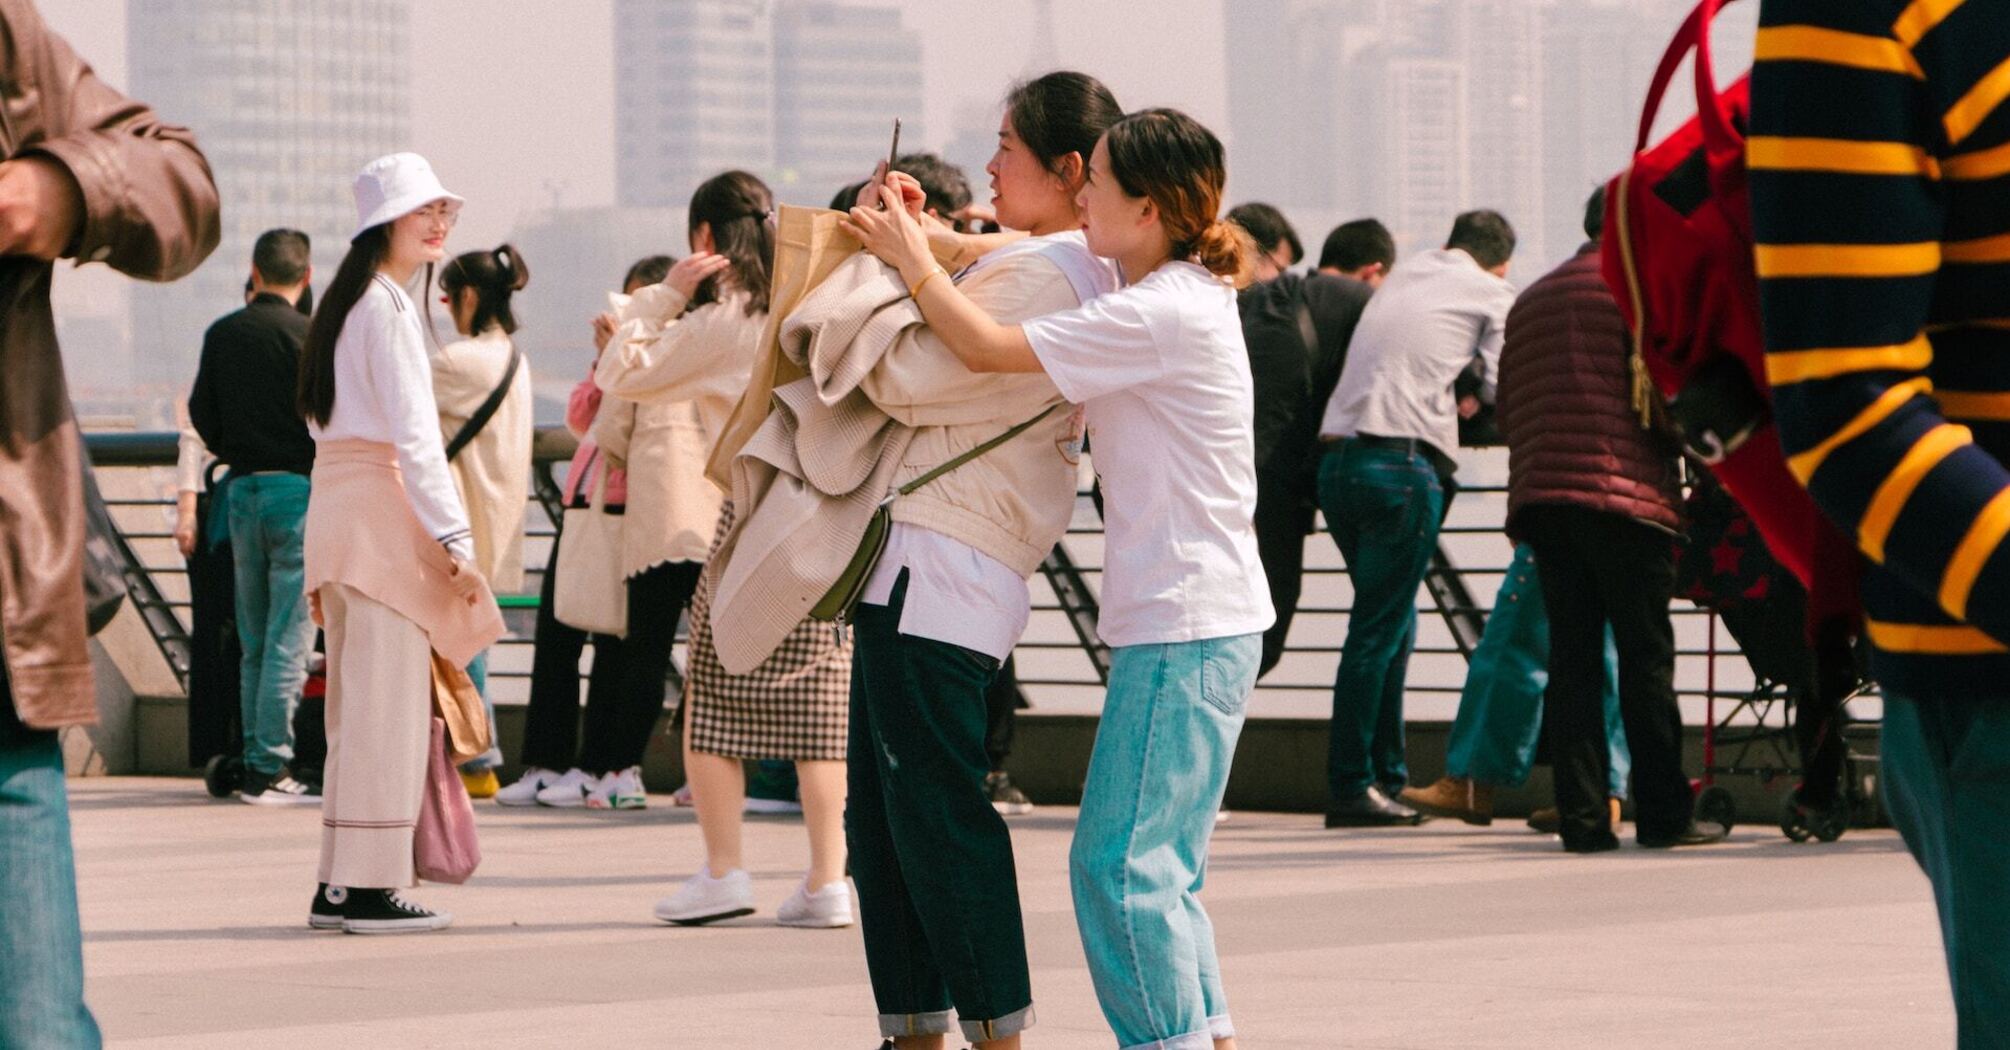 China tourists